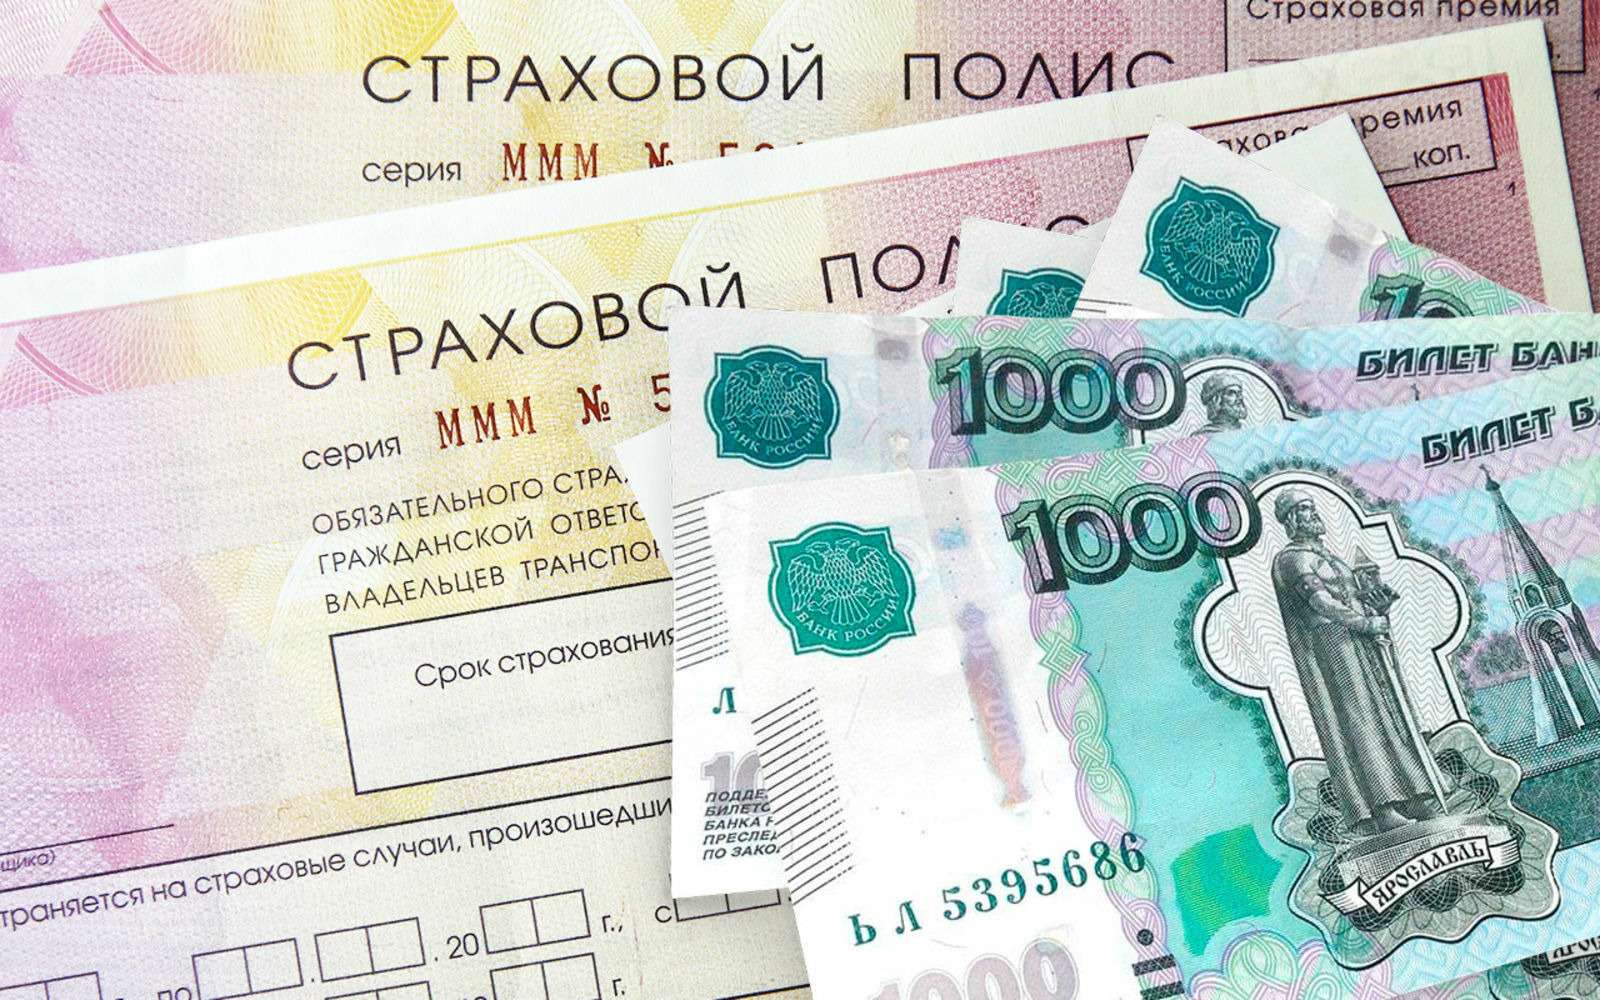 Средняя выплата по ОСАГО в марте впервые превысила рекордные 100 тысяч рублей